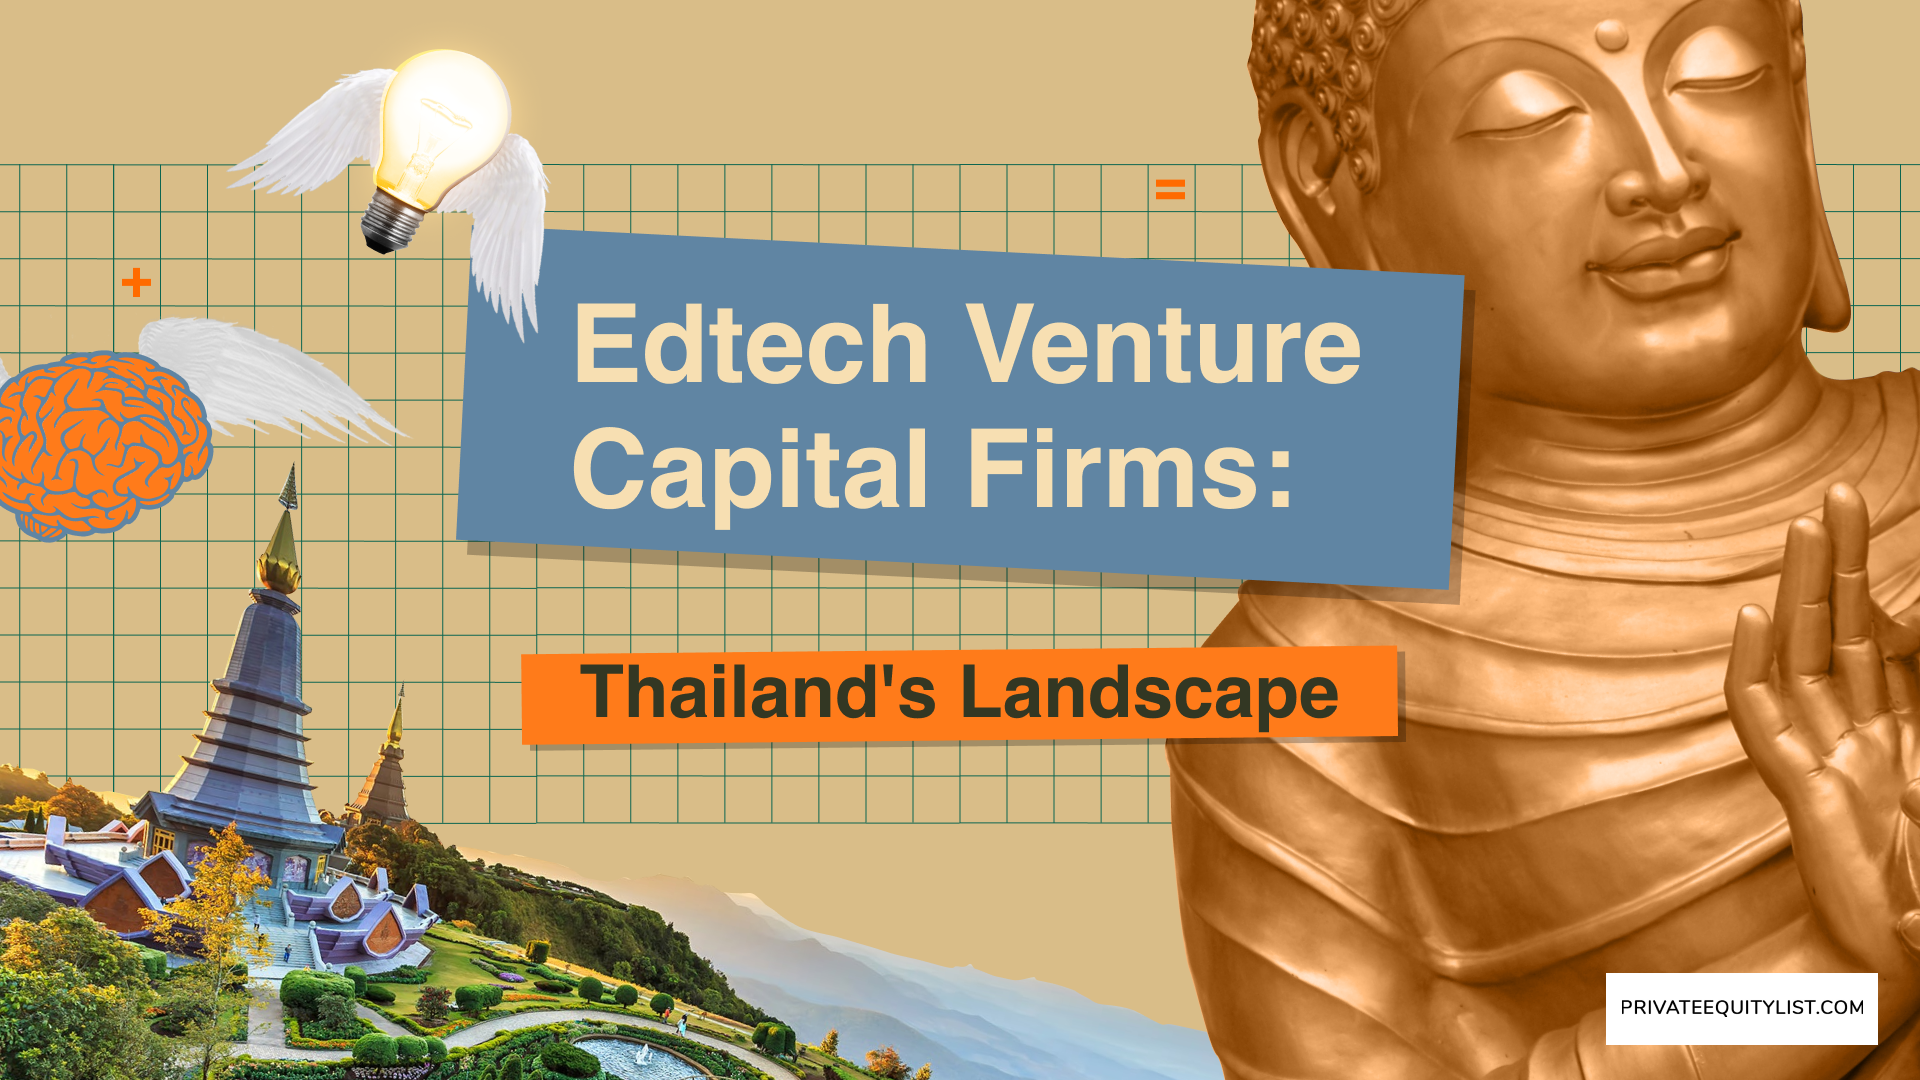 EdTech Venture Capital Firms: A Deep Dive into Thailand's Landscape